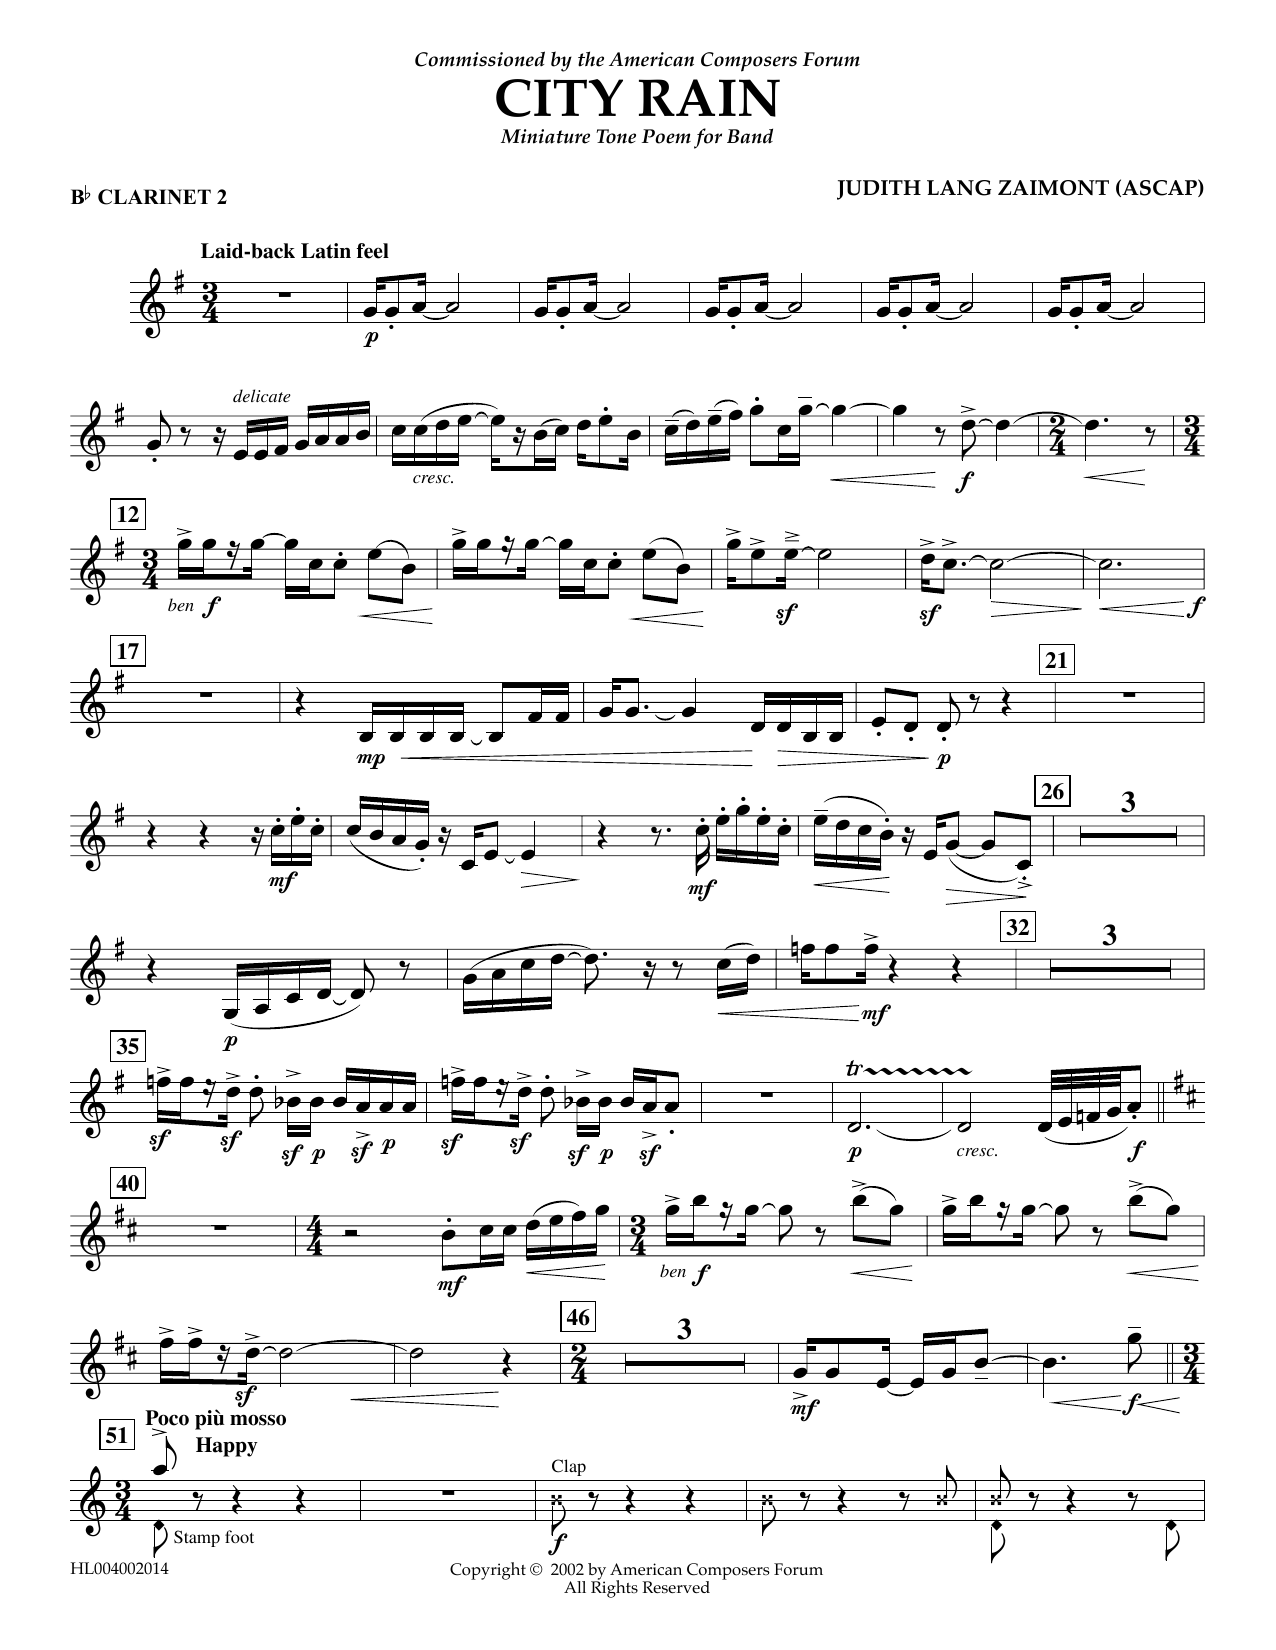 Download Judith Zaimont City Rain - Bb Clarinet 2 Sheet Music